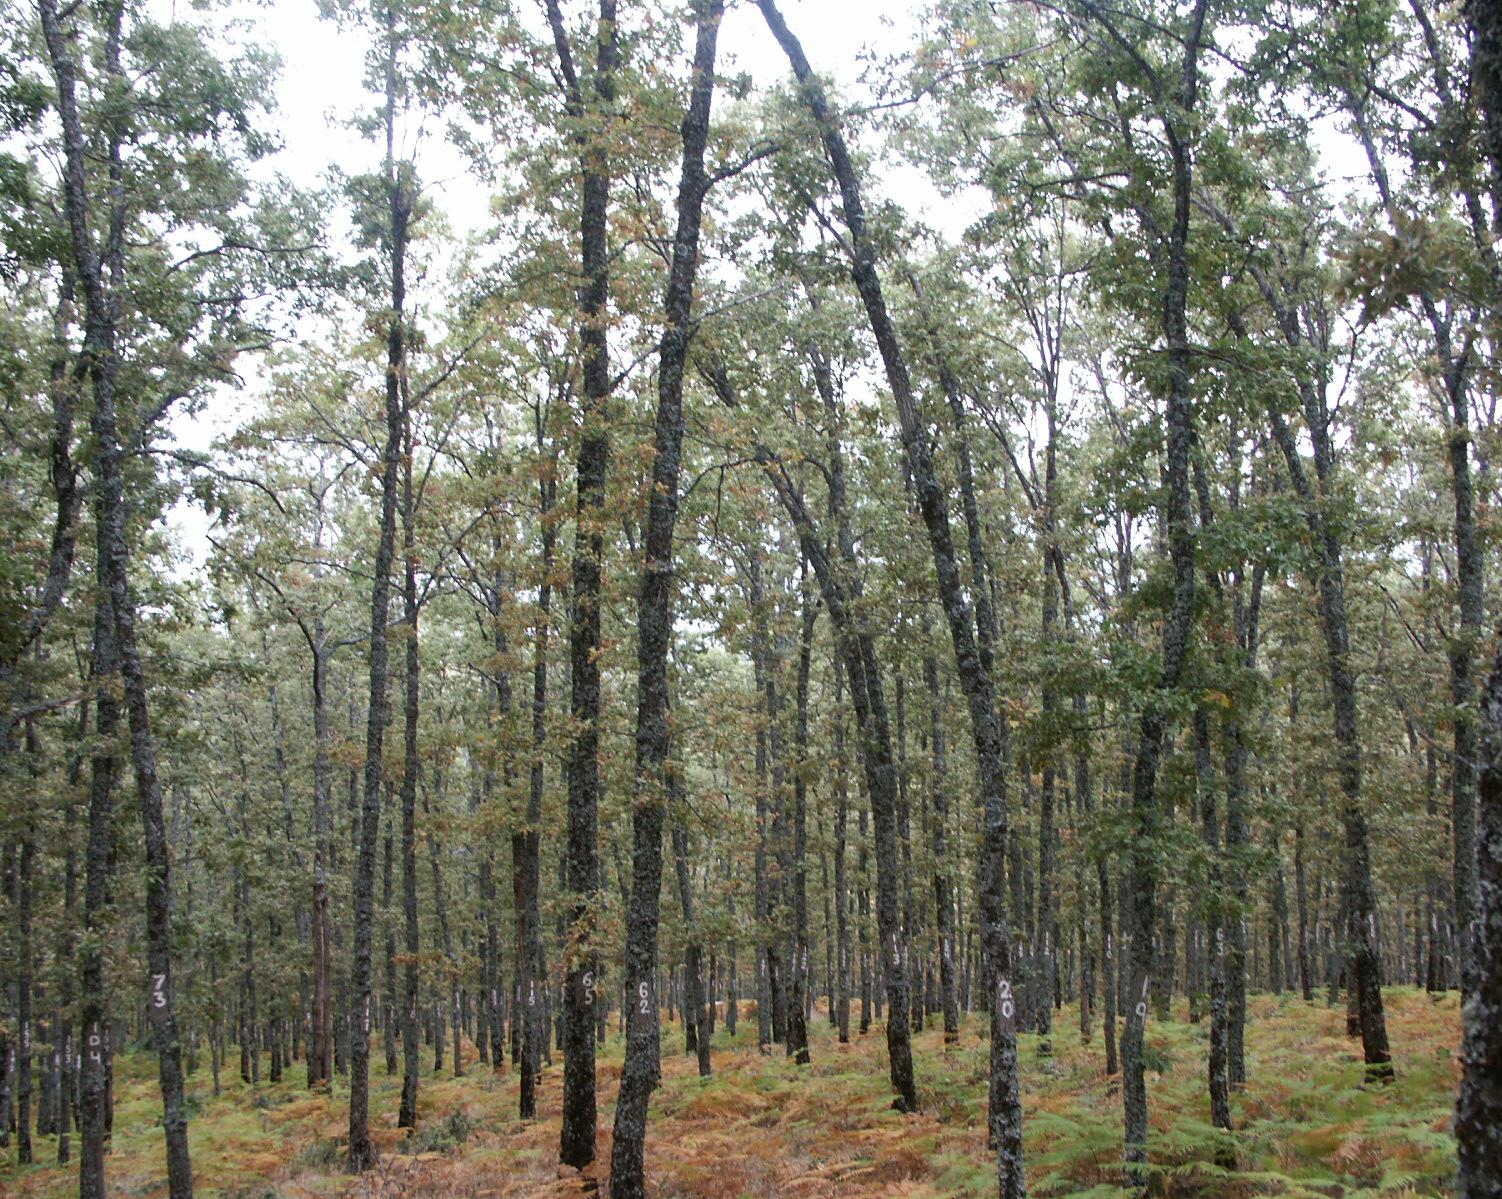 La madera de roble español de Quercus robur, Quercus petraea y Quercus pyrenaica tiene una calidad enológica similar e intermedia a la francesa y americana, de reconocido prestigio en la crianza de